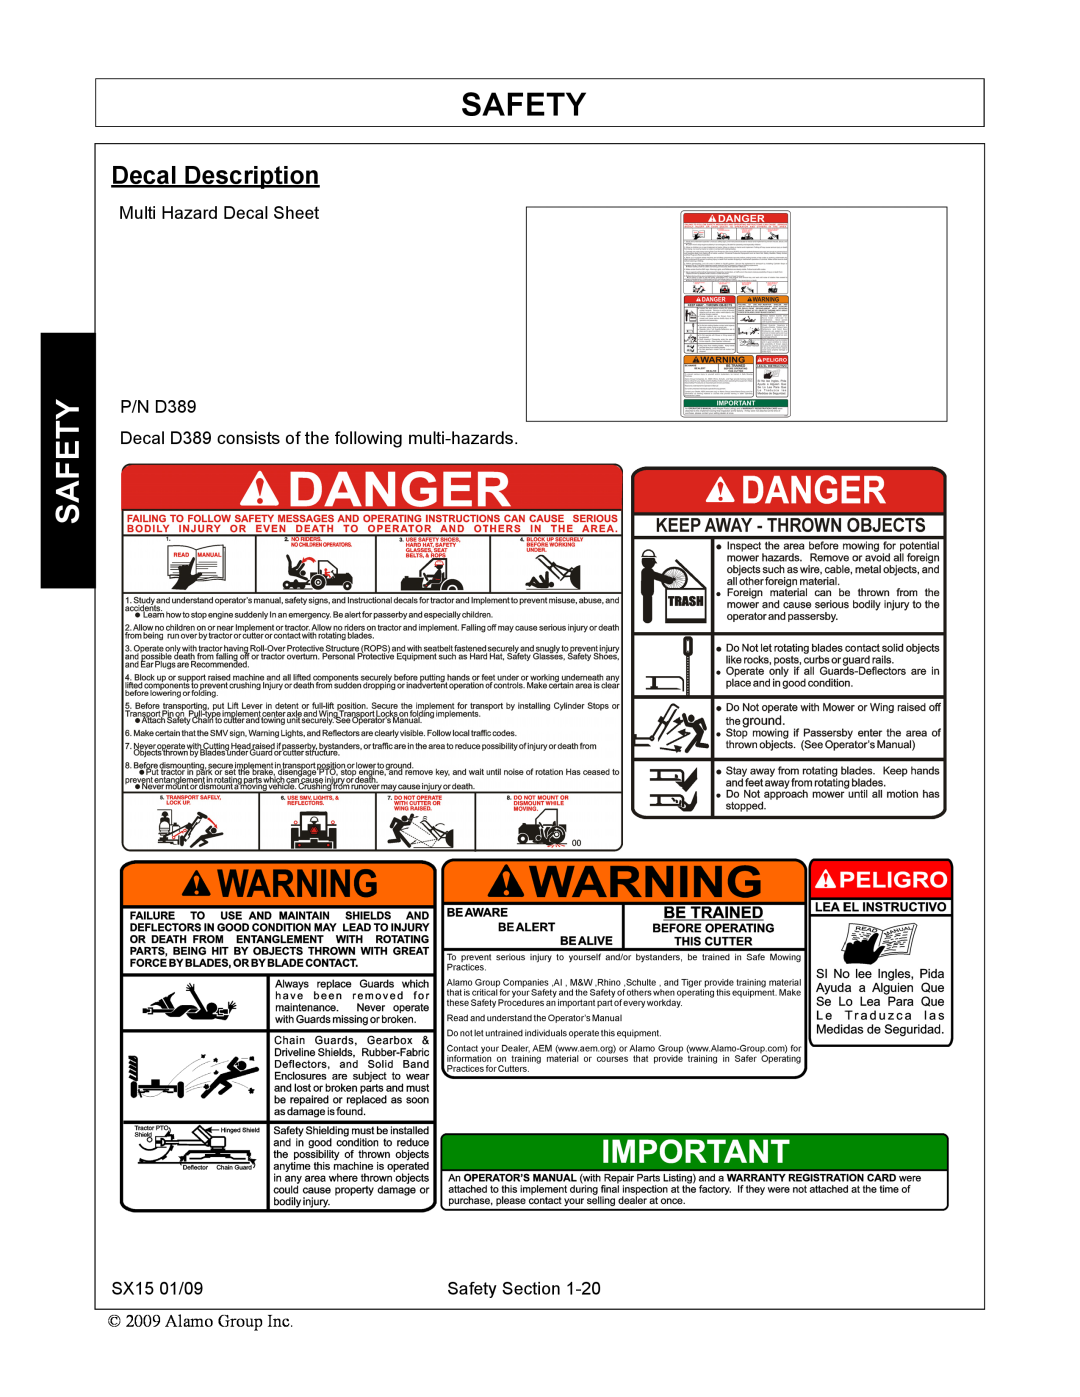 Alamo SX15 manual Decal Description, Safety 